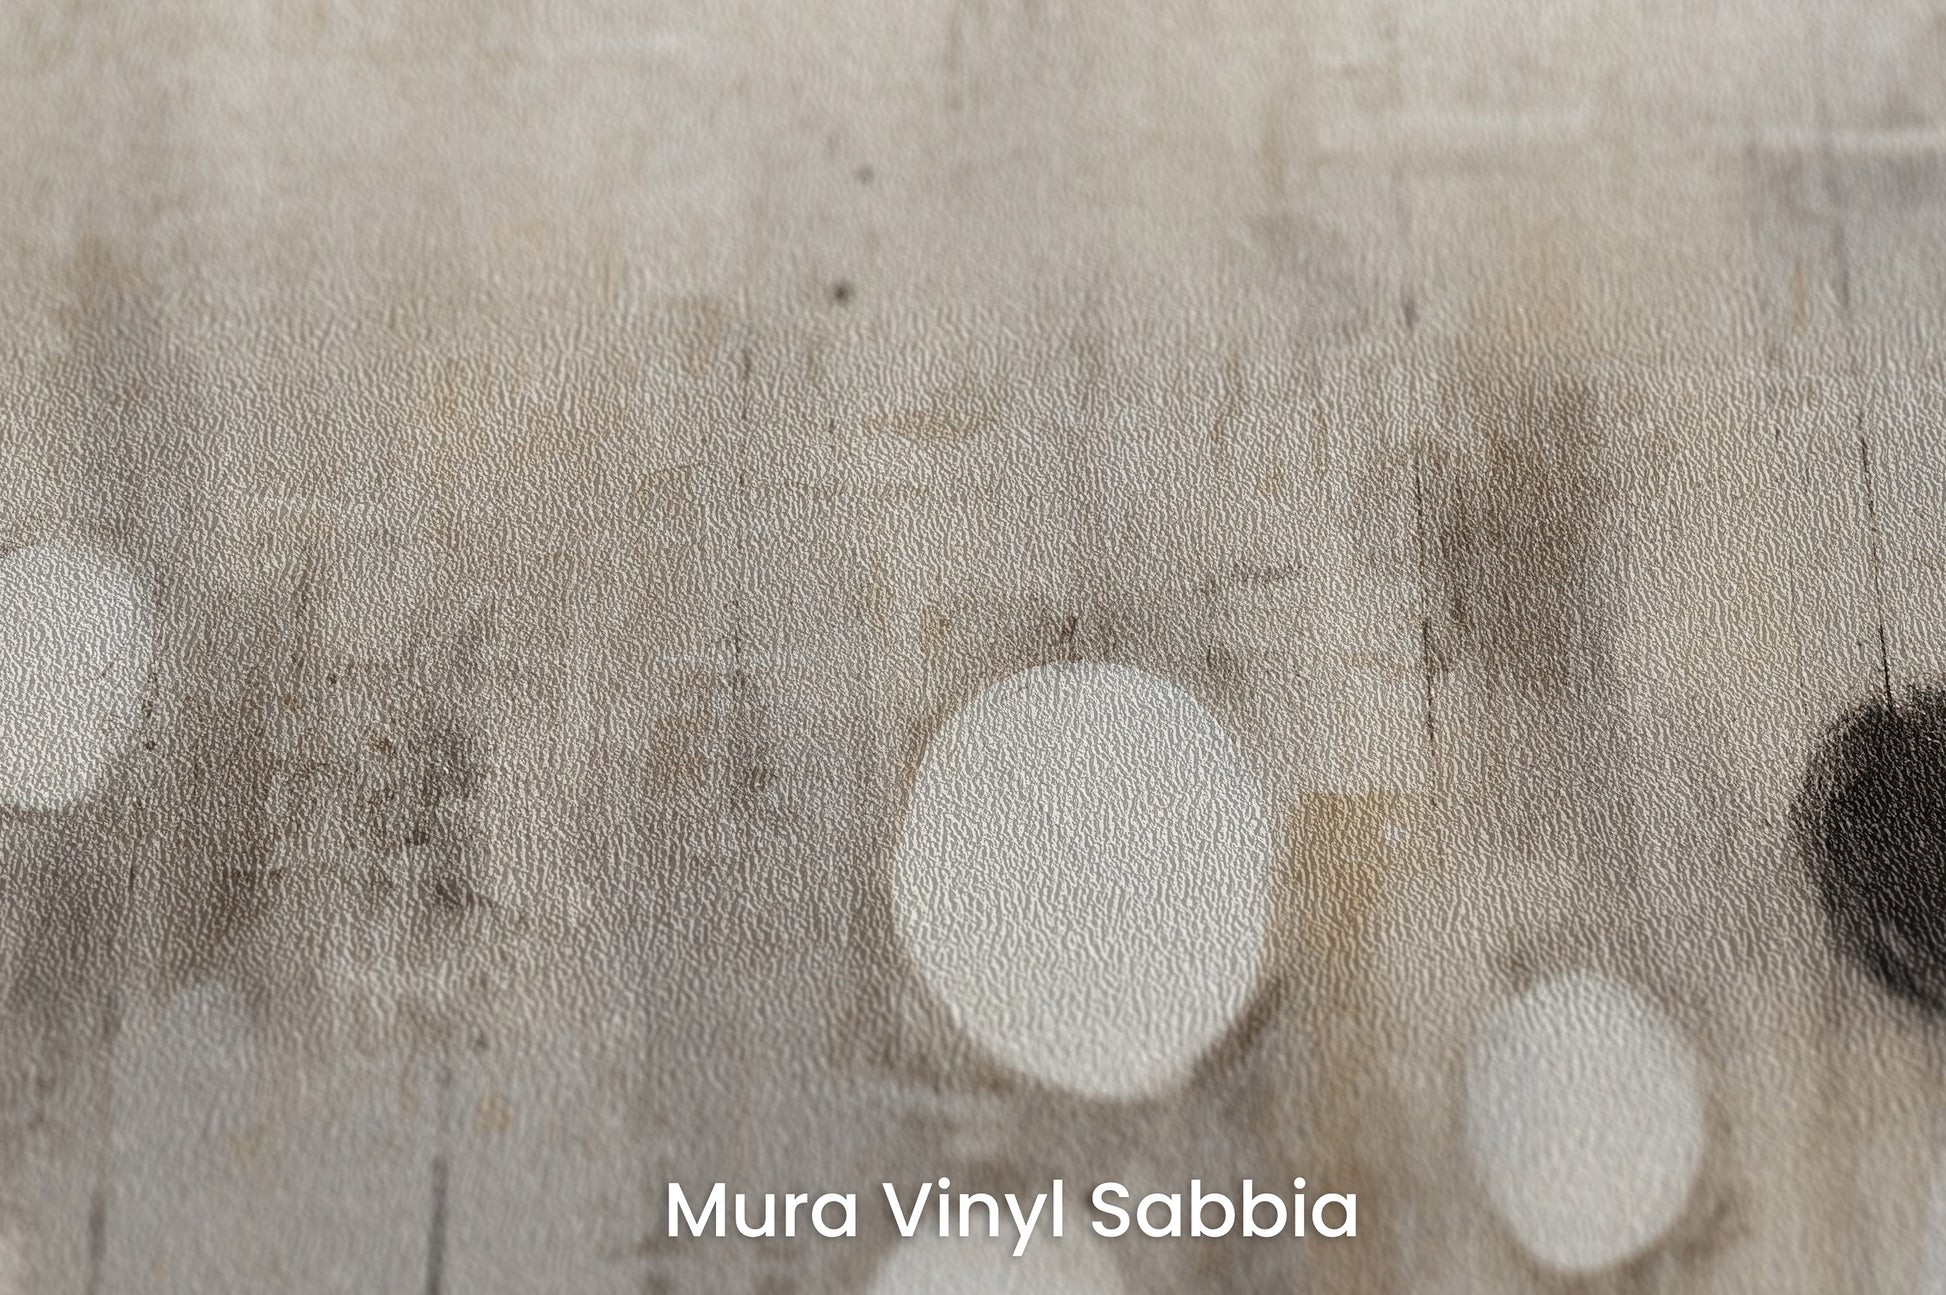 Zbliżenie na artystyczną fototapetę o nazwie MONOCHROME ELEGANCE SPHERES na podłożu Mura Vinyl Sabbia struktura grubego ziarna piasku.